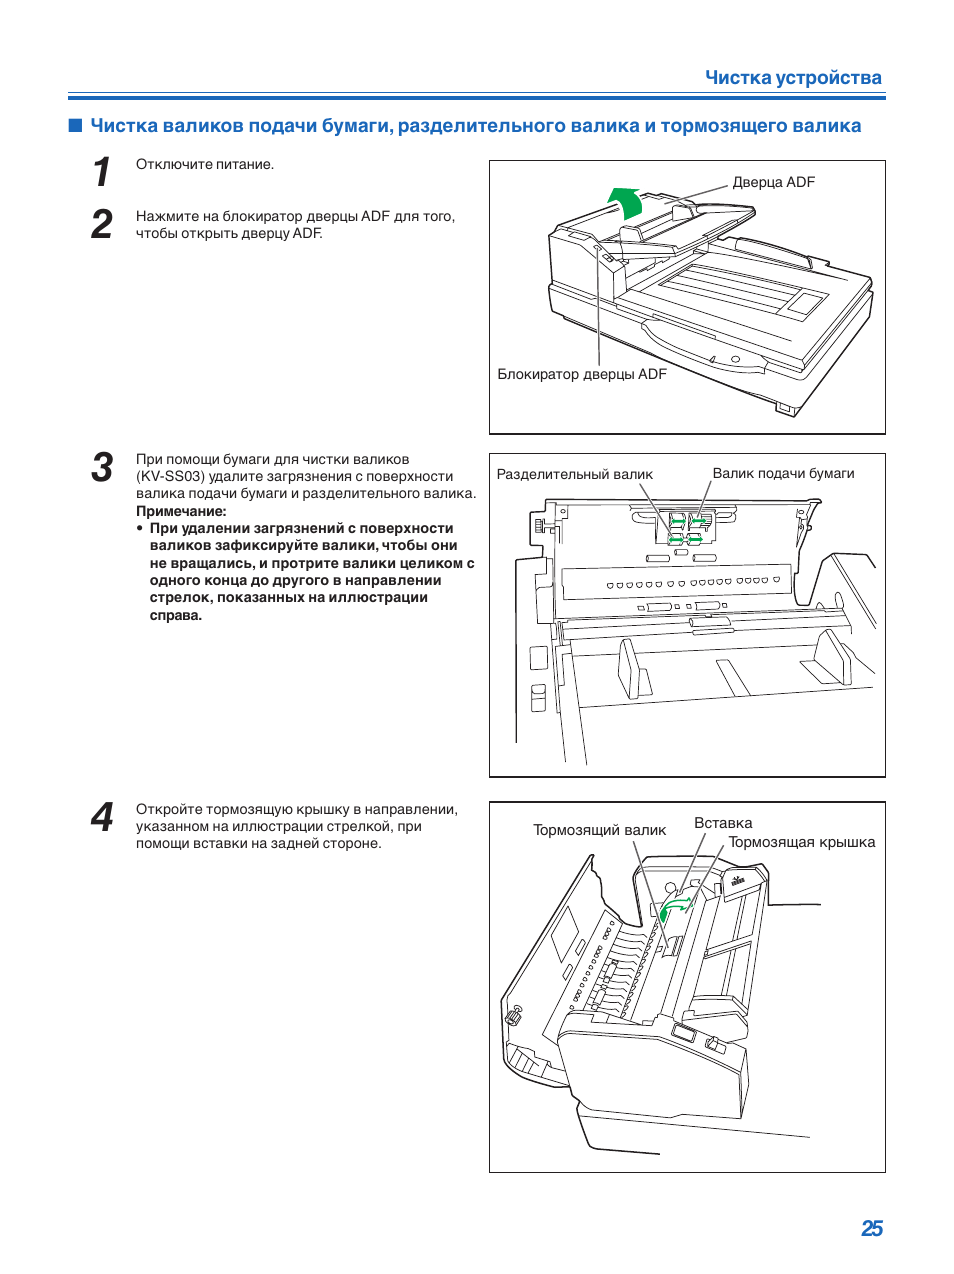 Тормозящего валика | Инструкция по эксплуатации Panasonic KV-S7065C | Страница 25 / 44